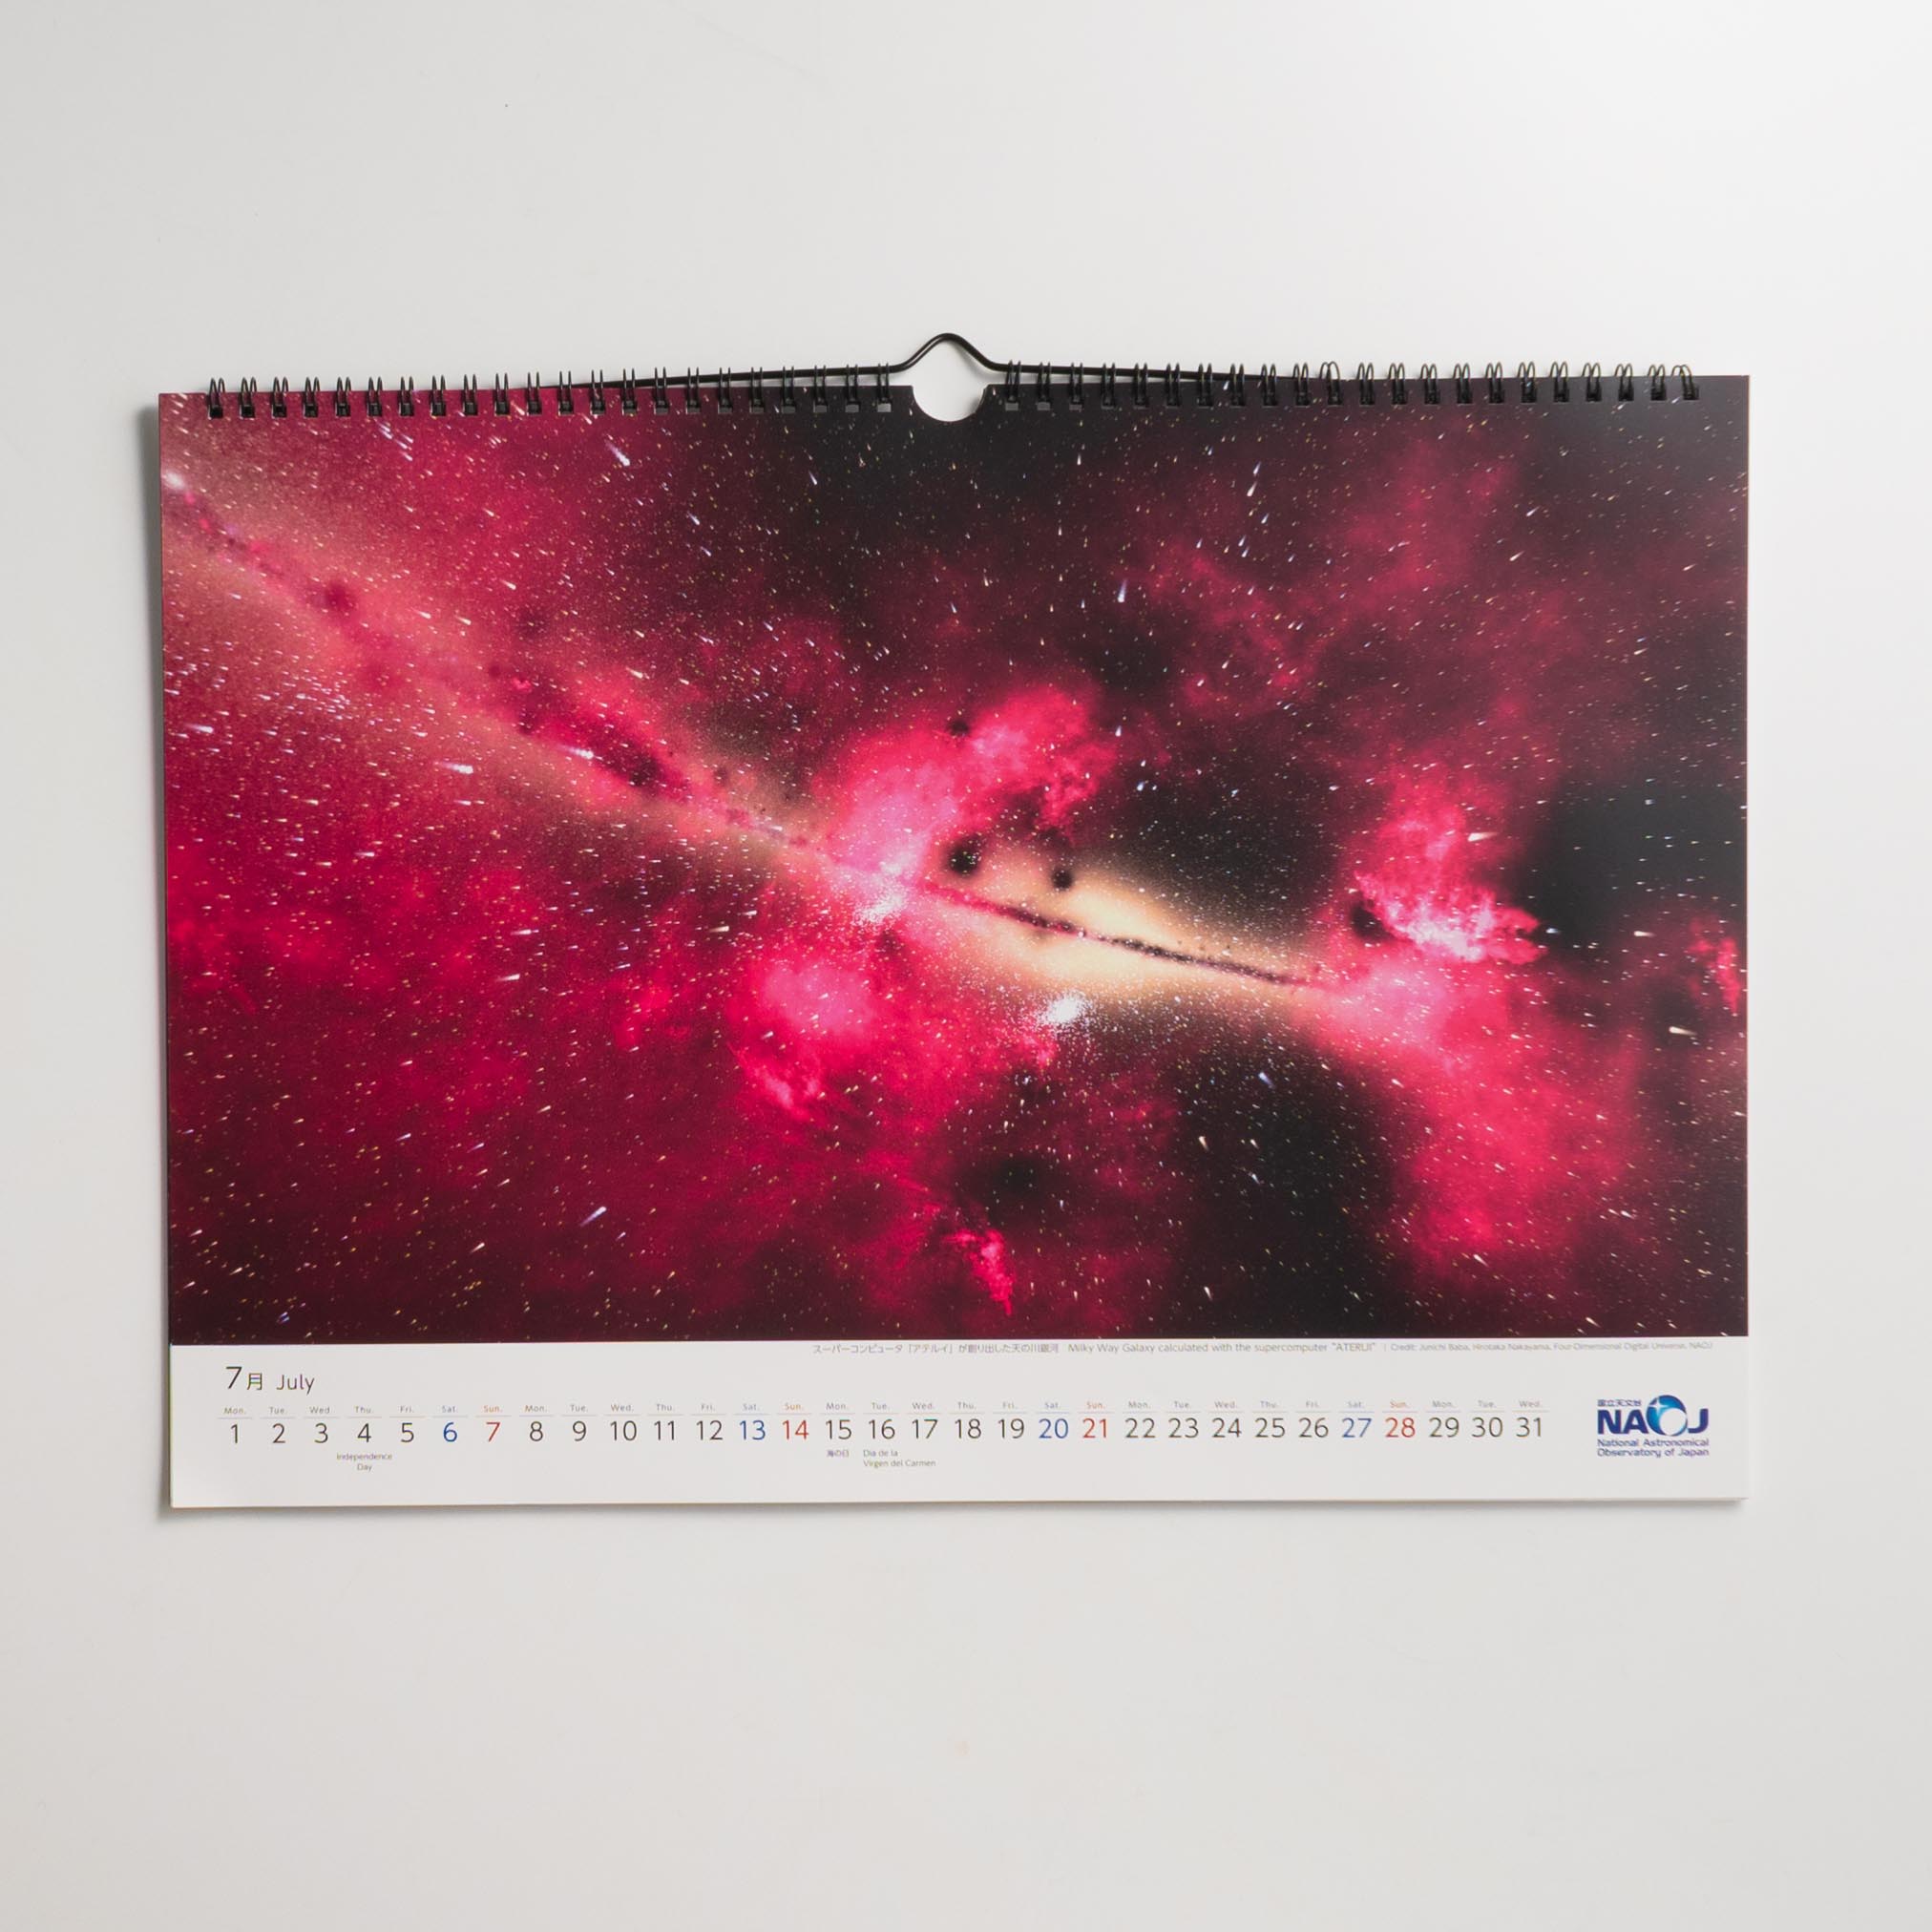 「自然科学研究機構　国立天文台 様」製作のオリジナルカレンダー ギャラリー写真1